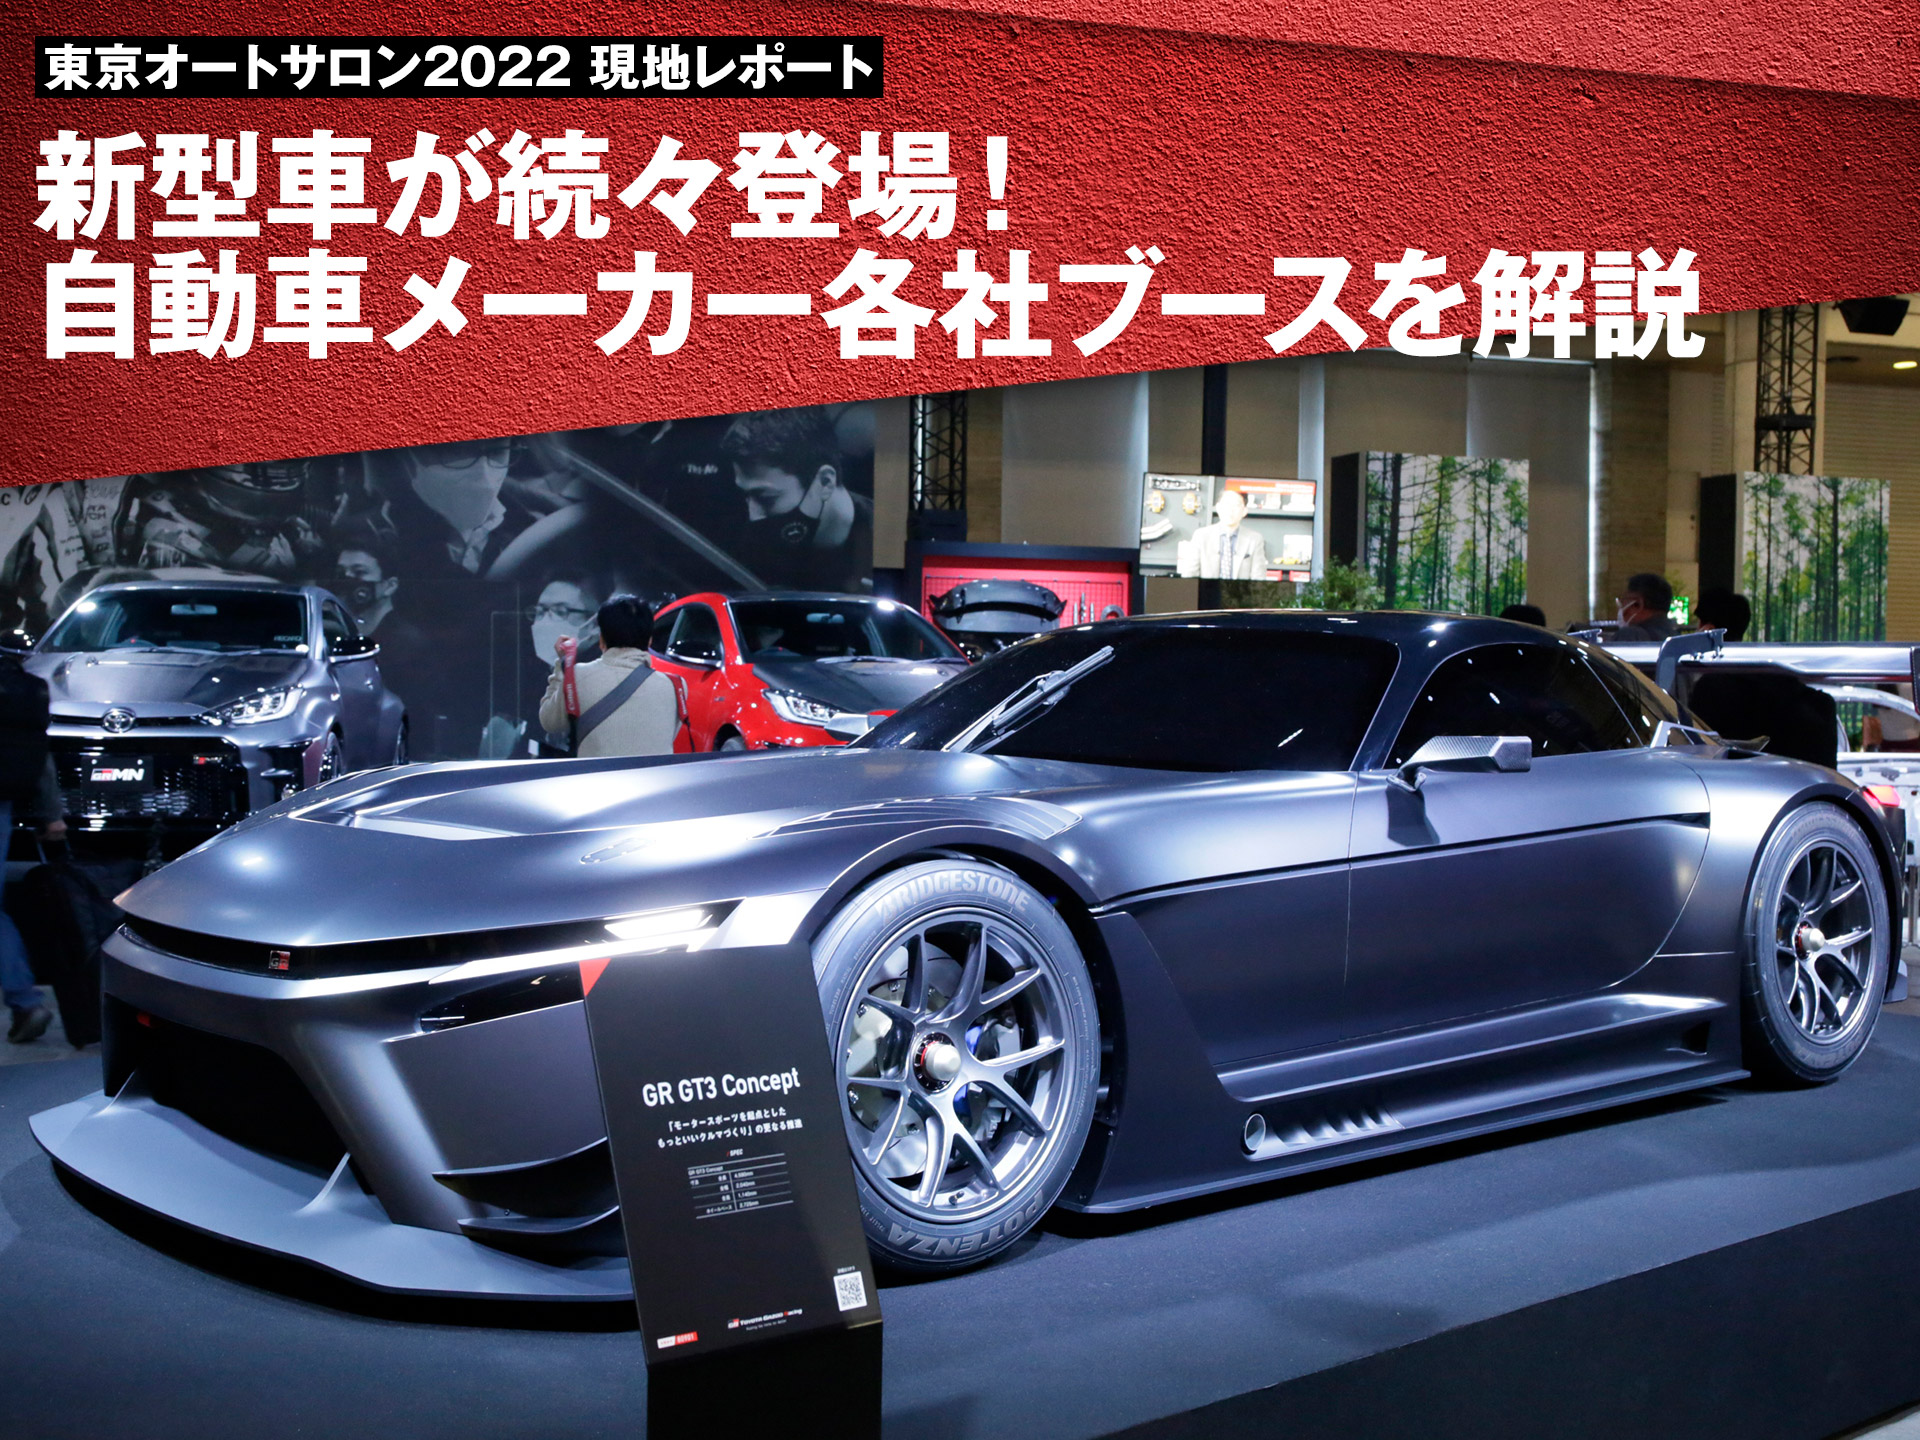 東京オートサロン22 新型車が続々登場 自動車メーカー各社ブースを解説 中古車なら グーネット